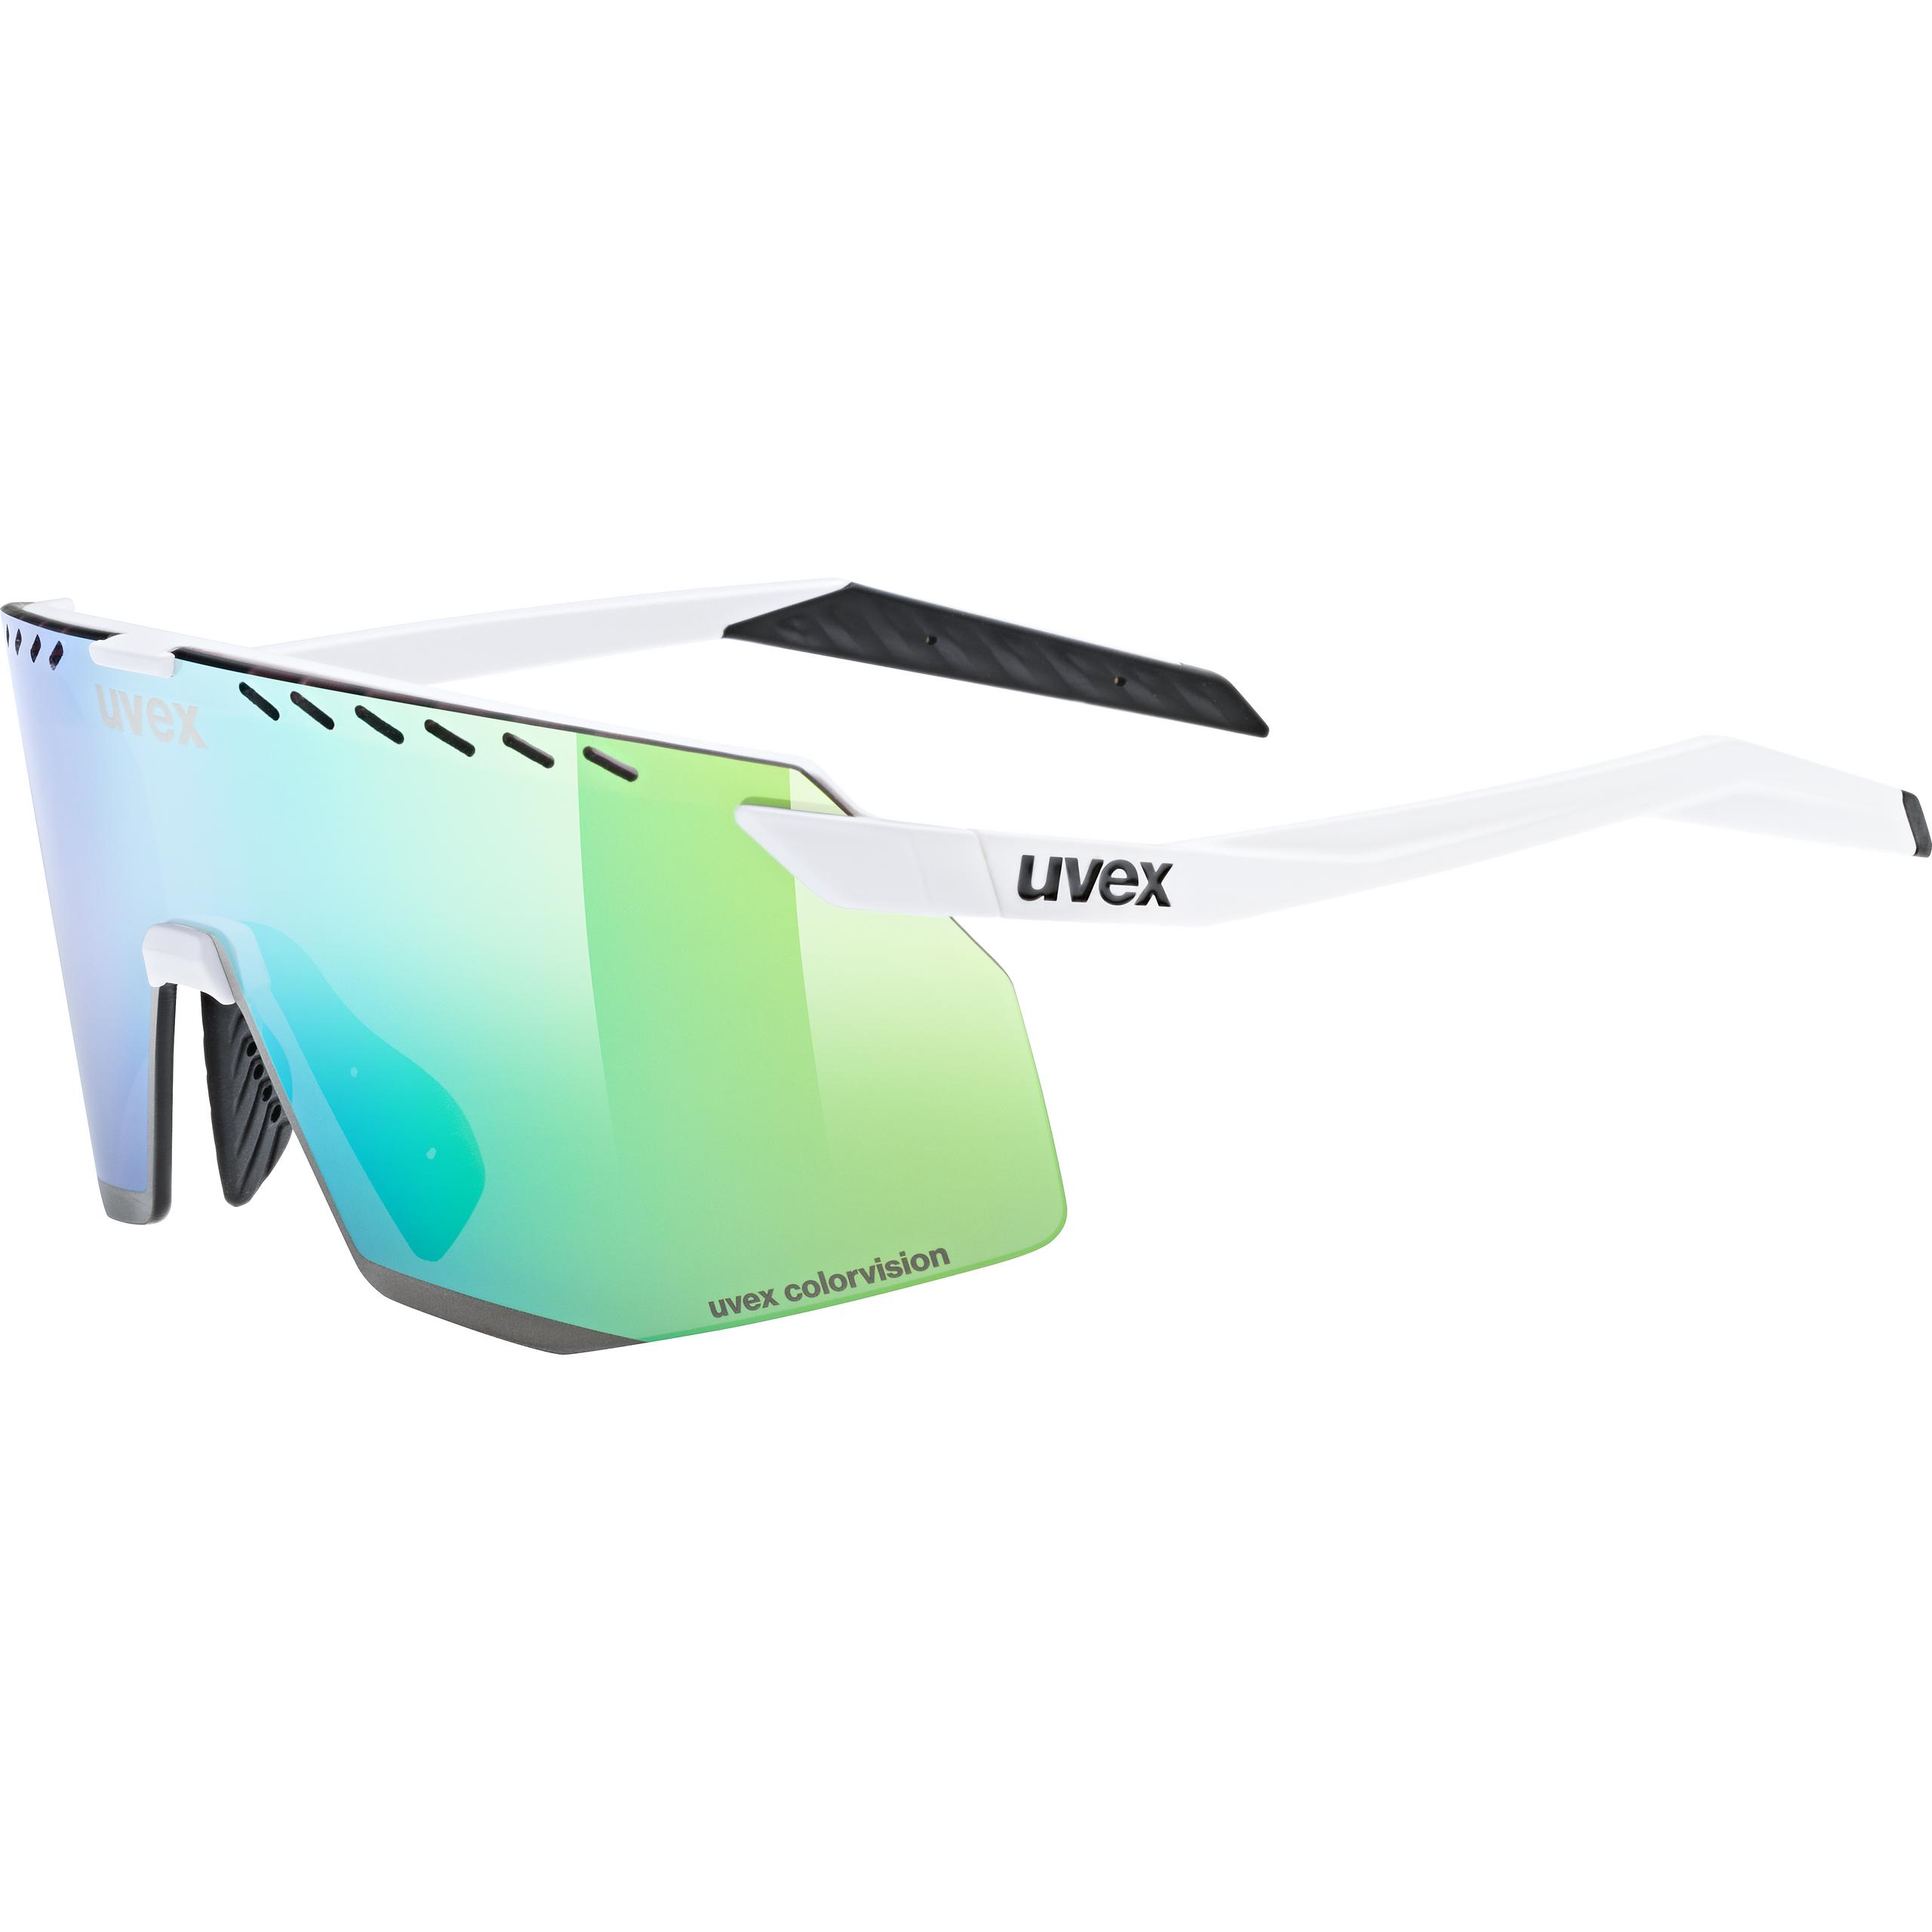 uvex pace stage CV white matt/mir.green | Eyewear | uvex sports